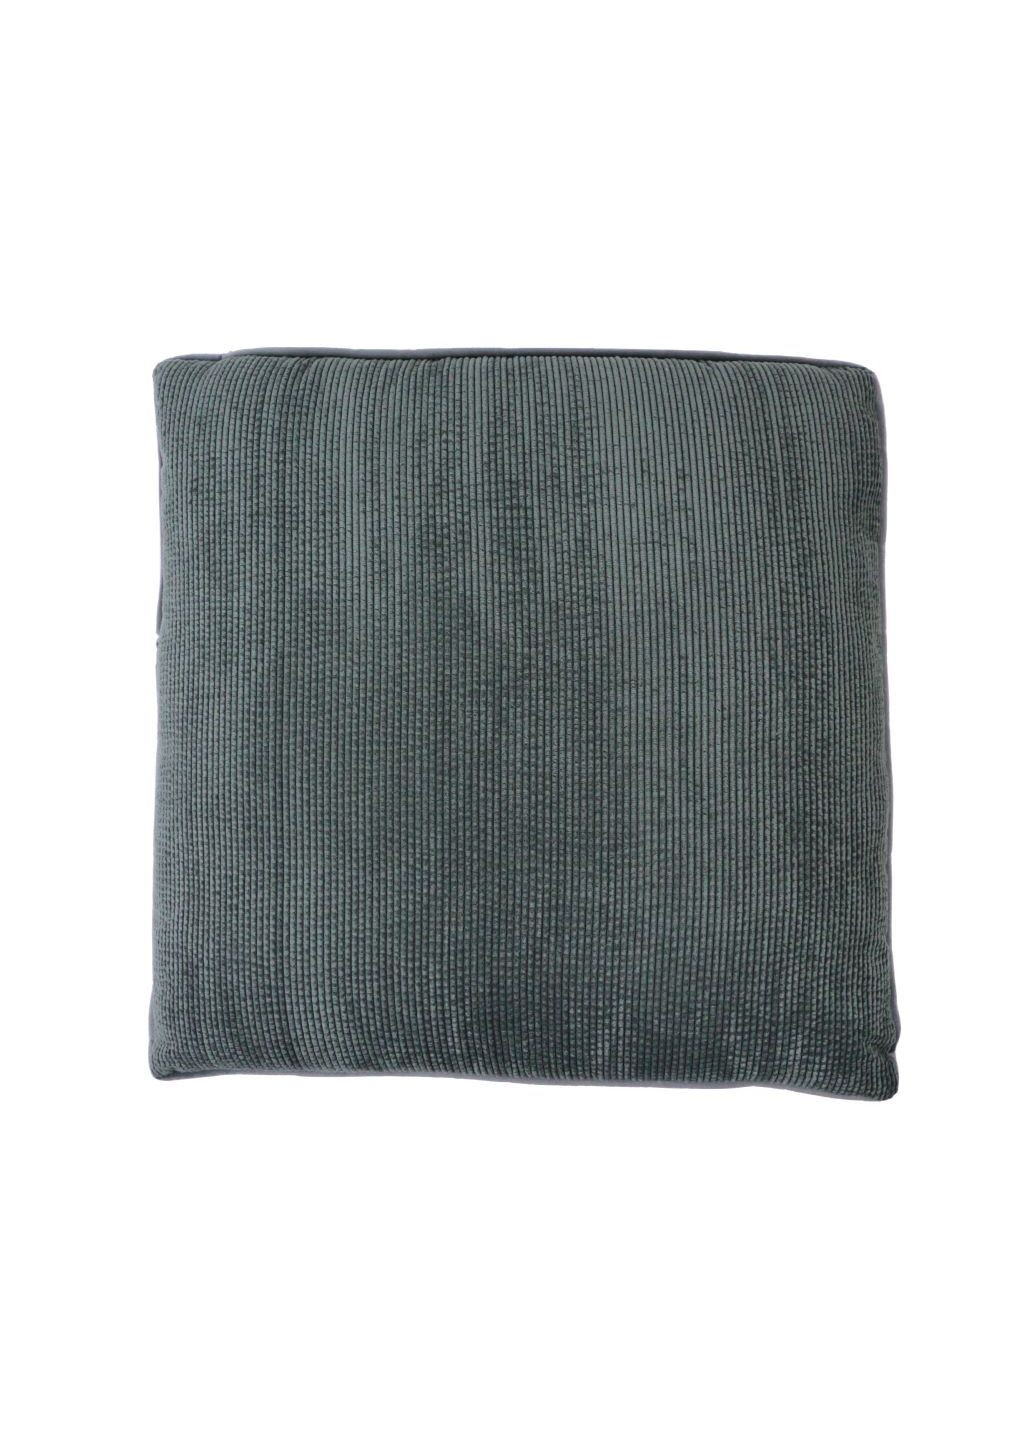 М'яка декоративна подушка в смужку 50х50 см сіра Lidl (276254511)